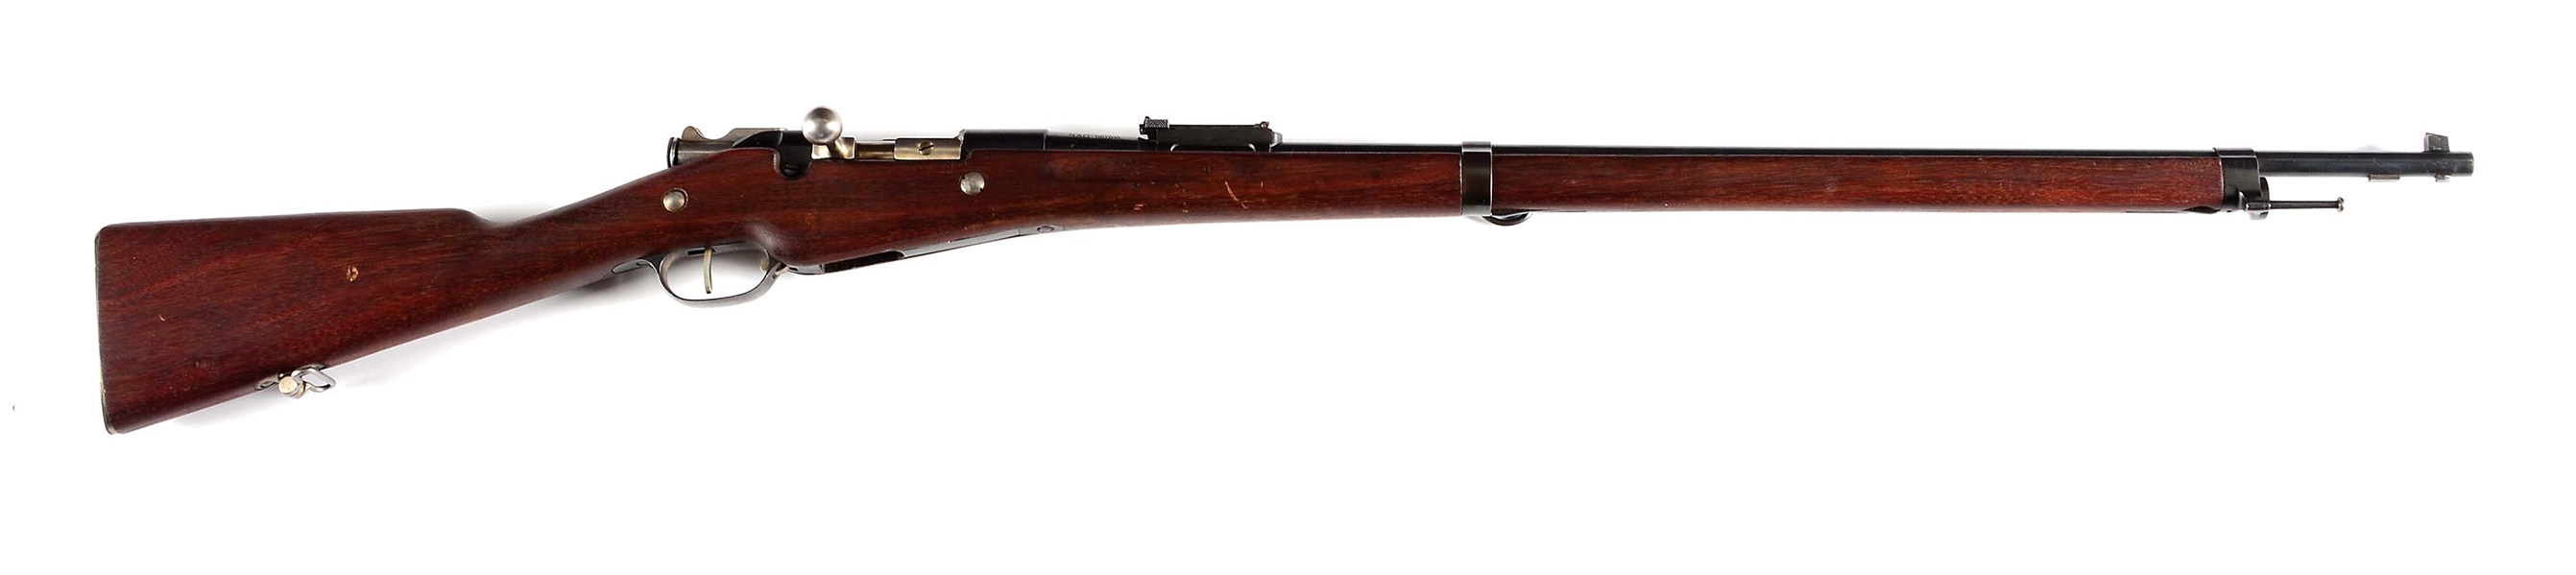 (C) FINE REMINGTON BERTHIER M1907-15 BOLT ACTION RIFLE.